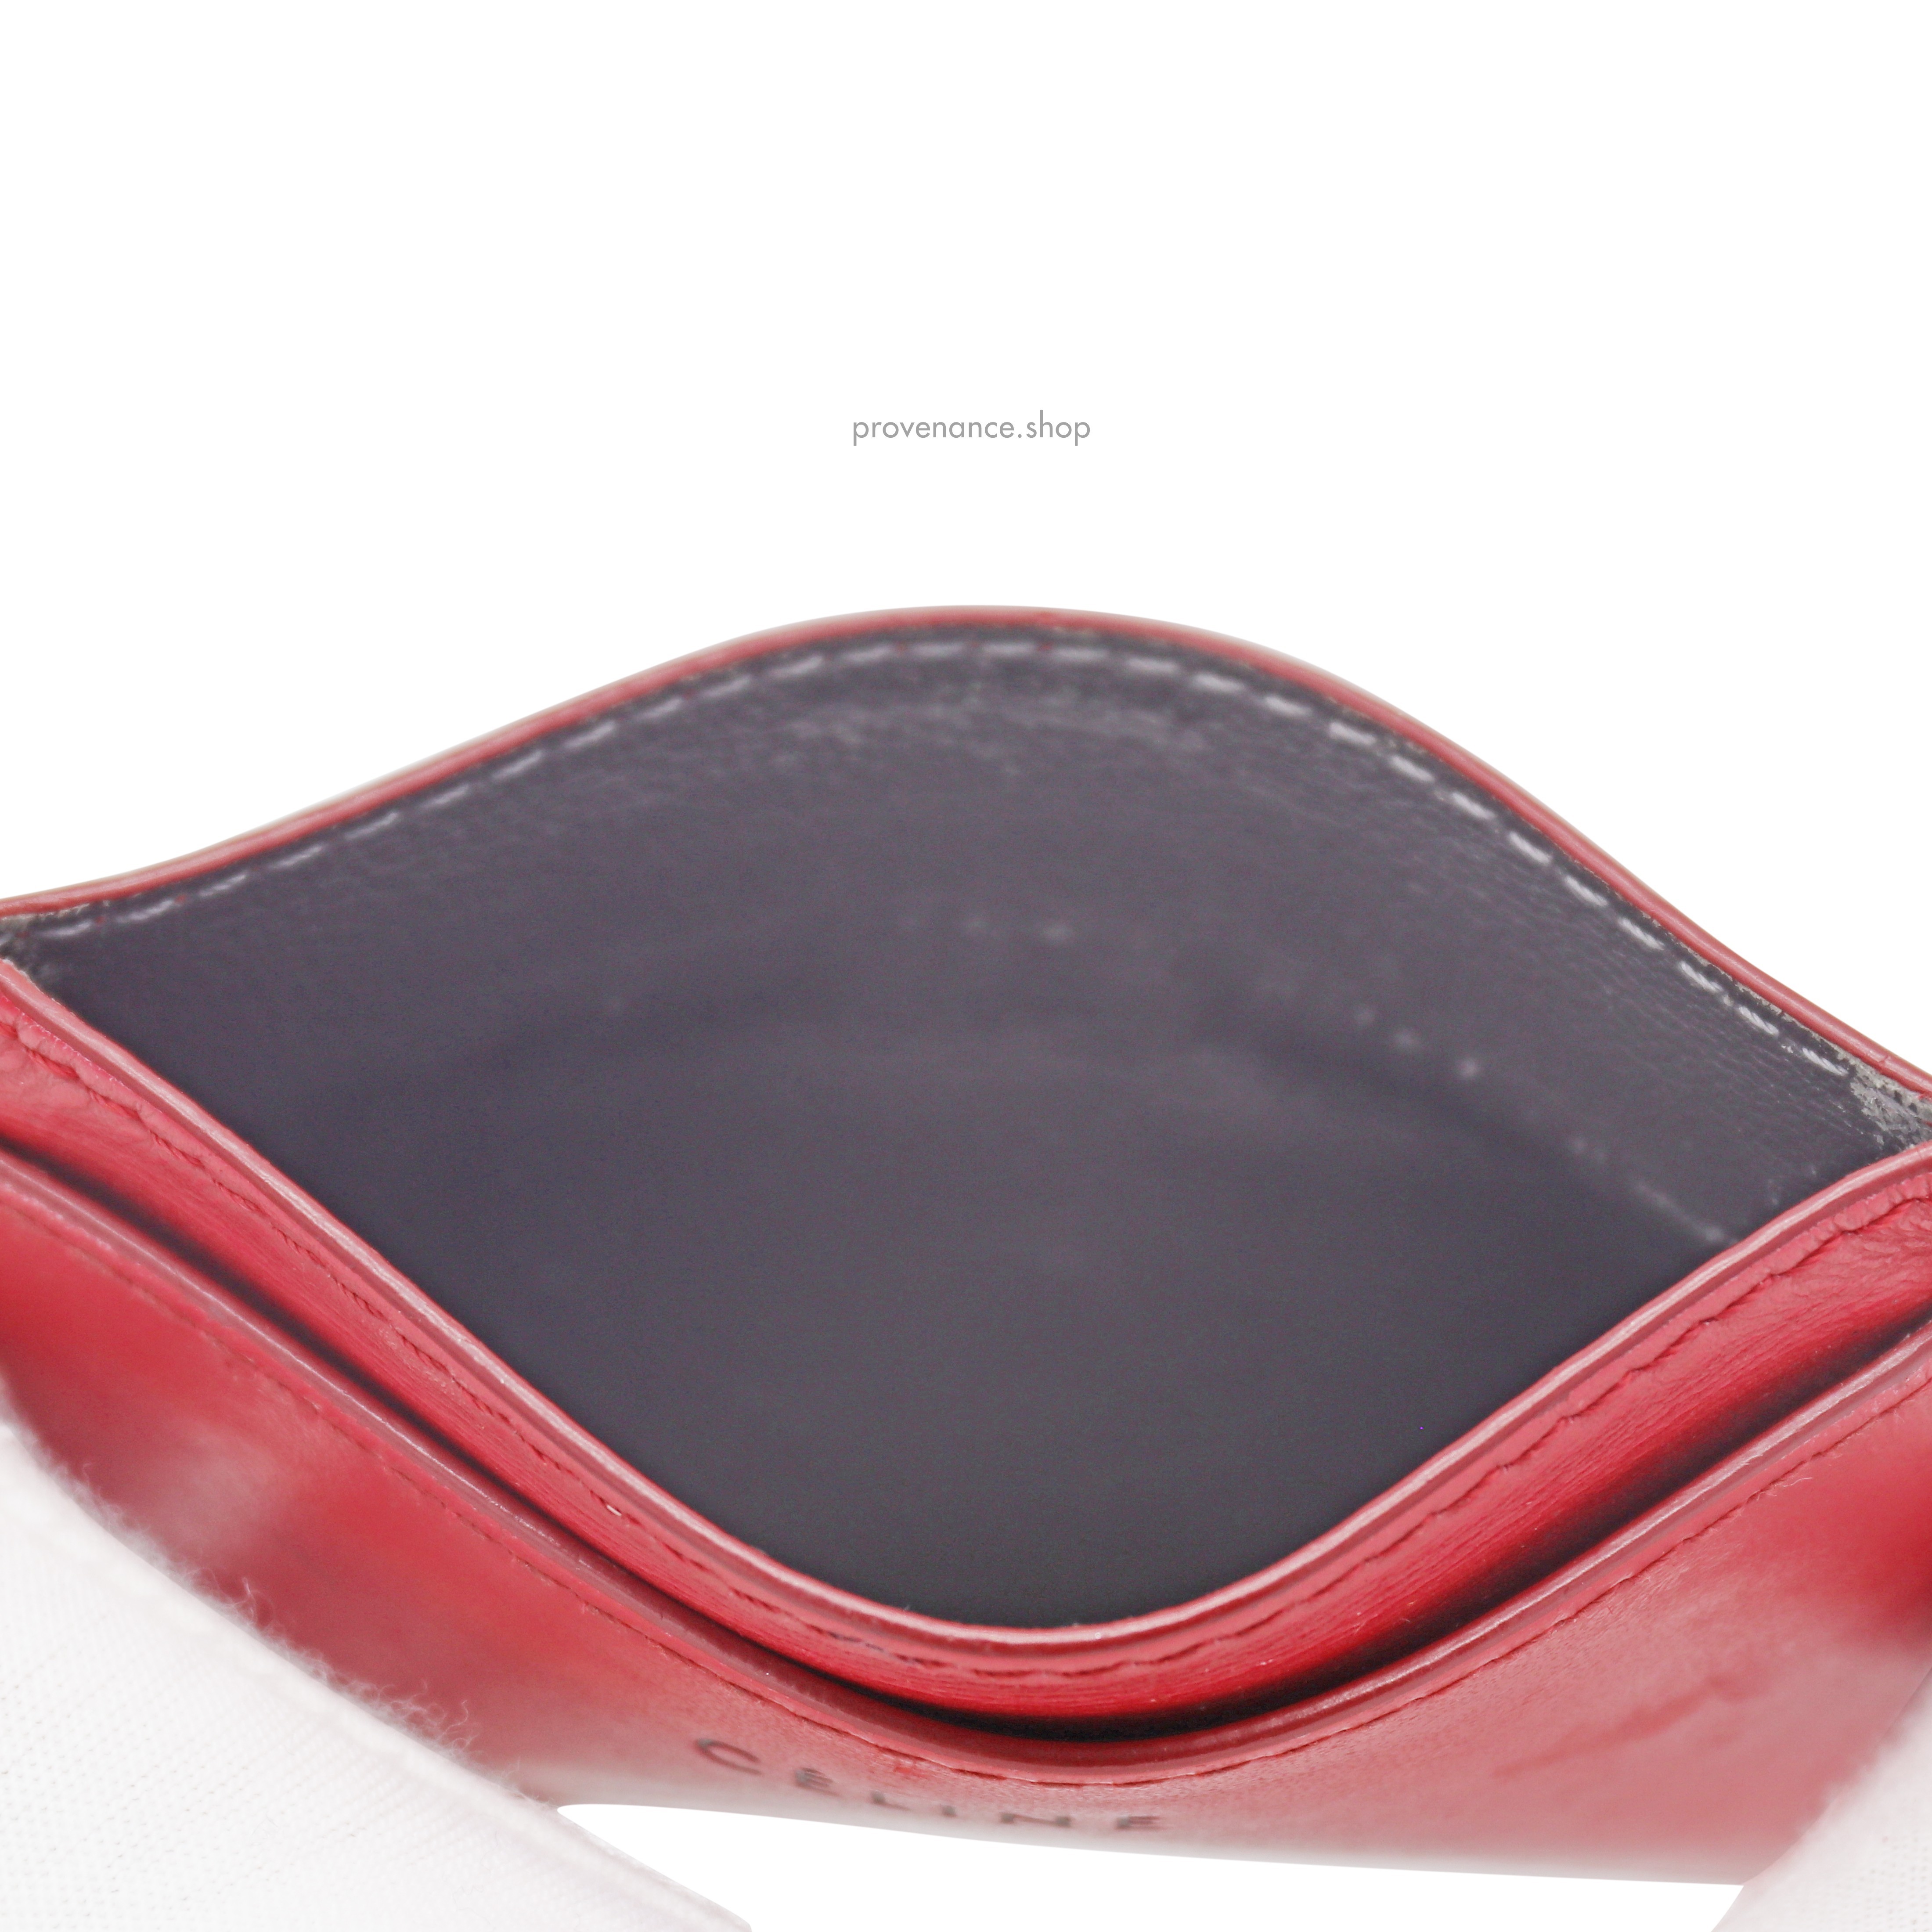 Celine Card Holder Wallet - Red Leather - 4